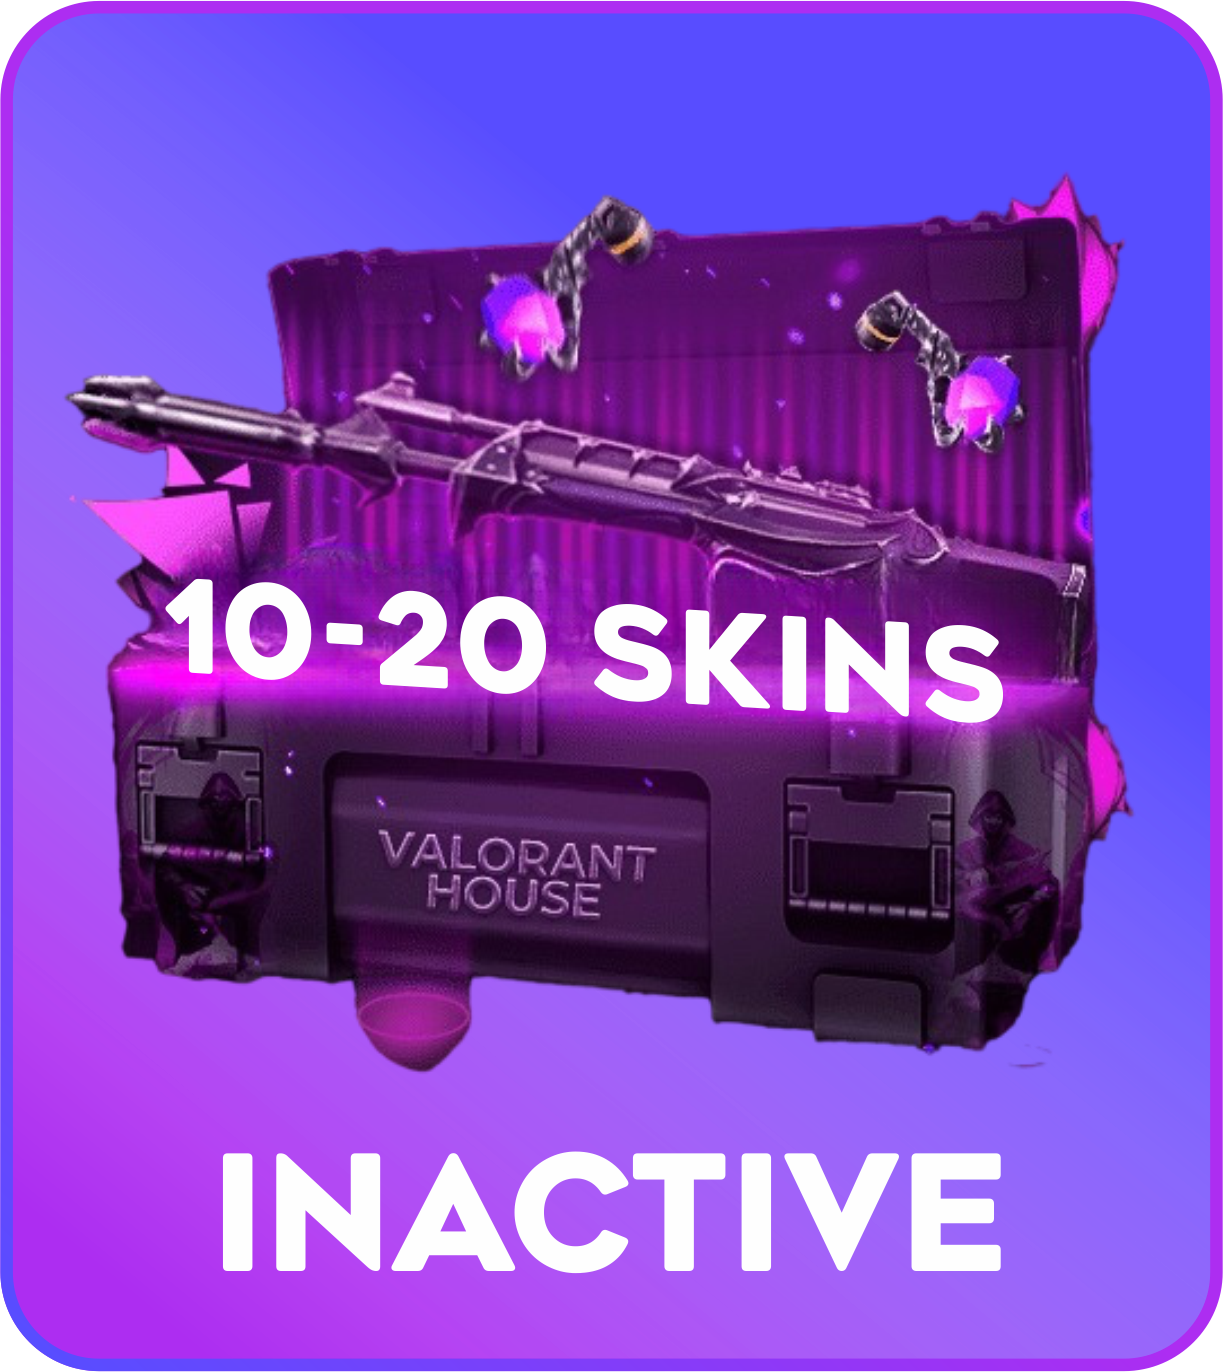 Inactive 10-20 skins Valorant Account